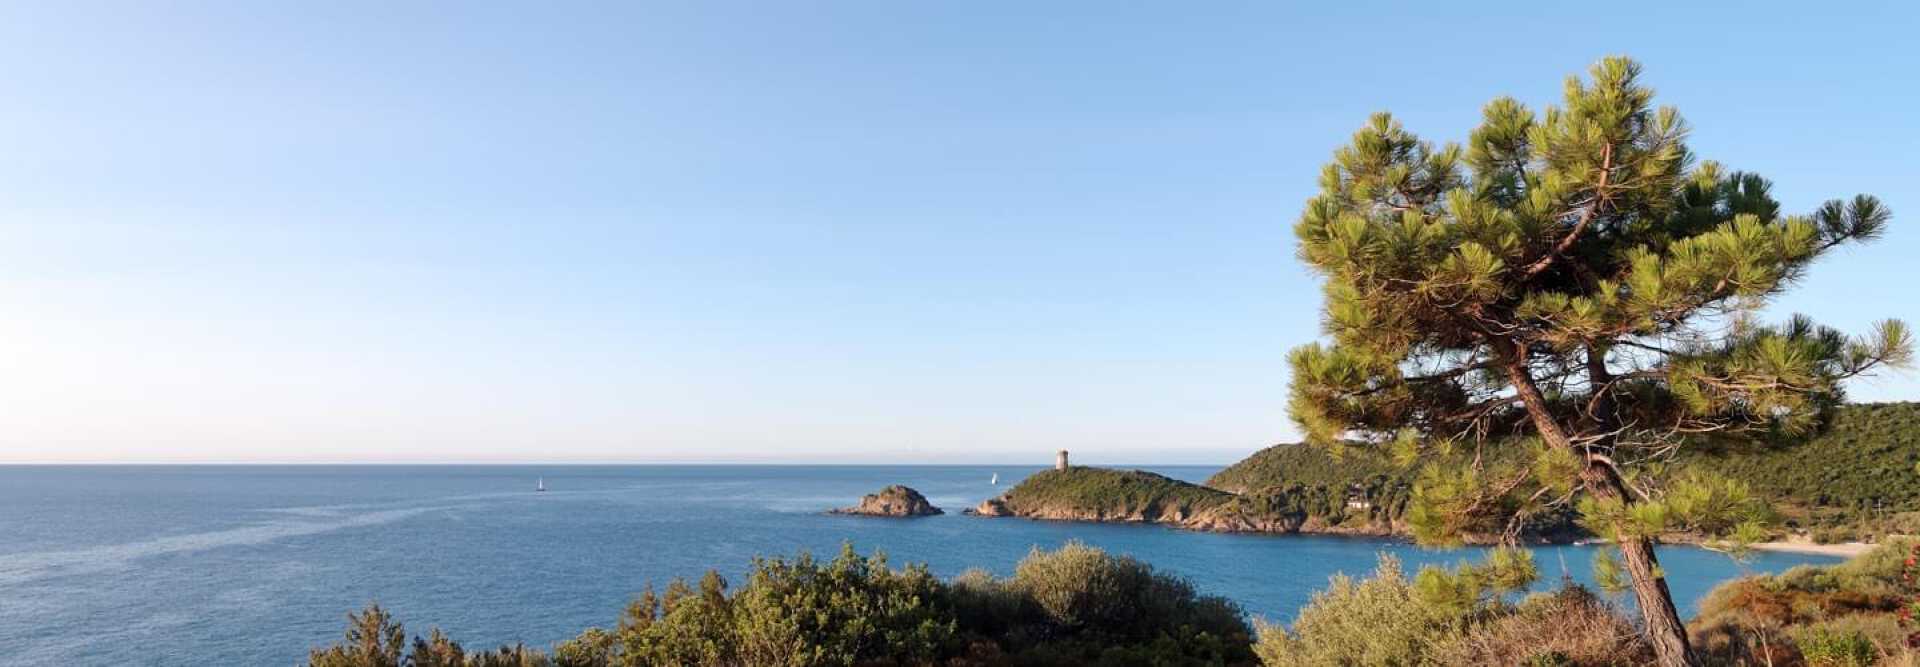 Vue des côtes de Figari en Corse avec la mer et les voiliers par un après-midi ensoleillé et sans nuage